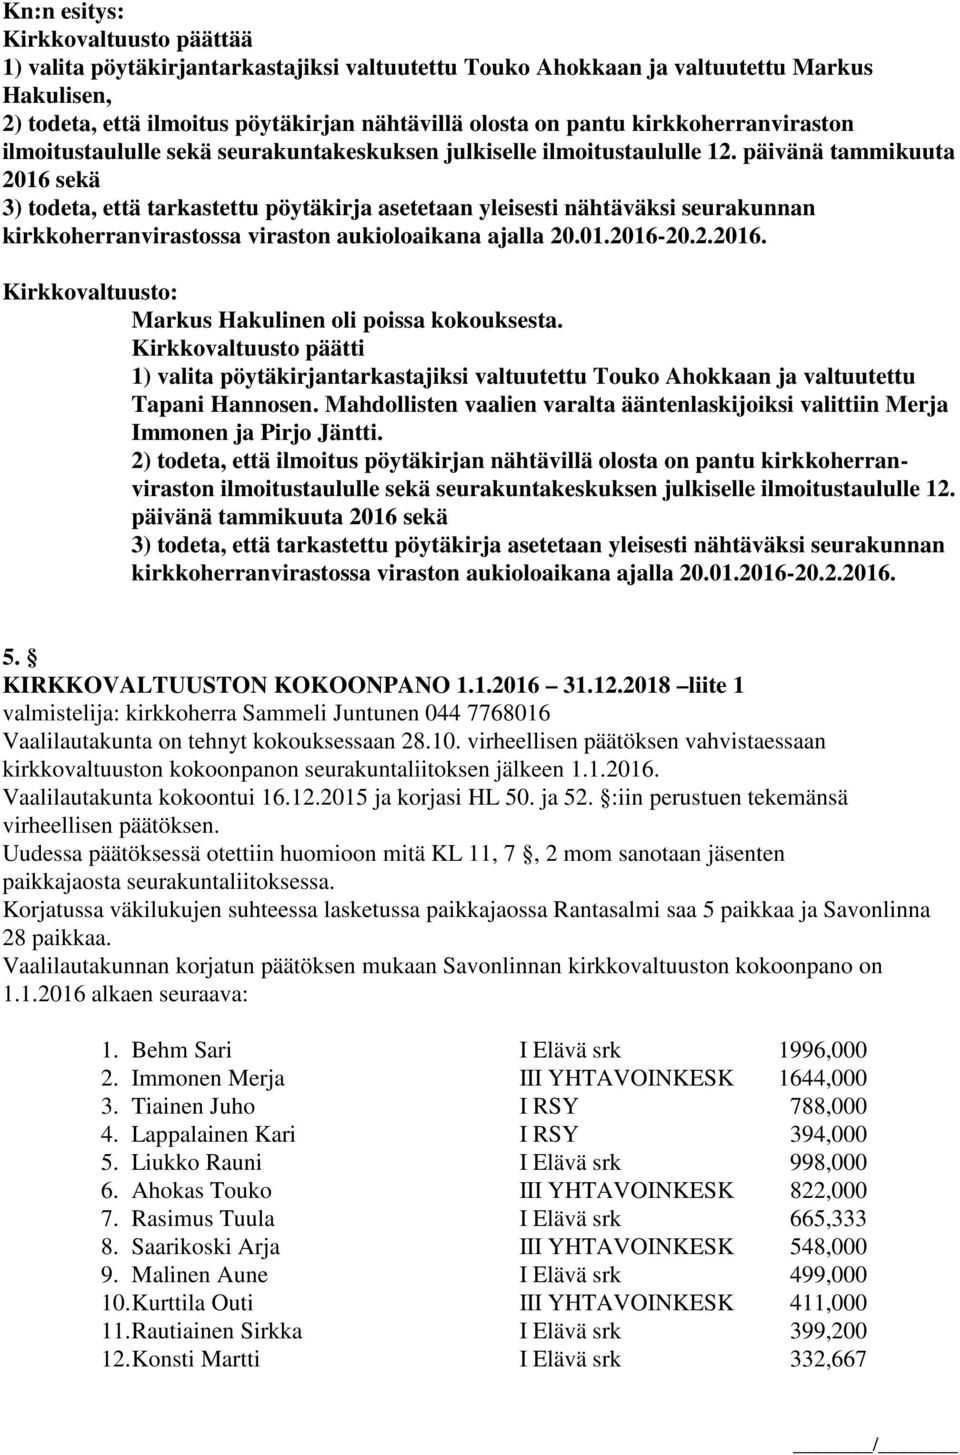 päivänä tammikuuta 2016 sekä 3) todeta, että tarkastettu pöytäkirja asetetaan yleisesti nähtäväksi seurakunnan kirkkoherranvirastossa viraston aukioloaikana ajalla 20.01.2016-20.2.2016. Markus Hakulinen oli poissa kokouksesta.